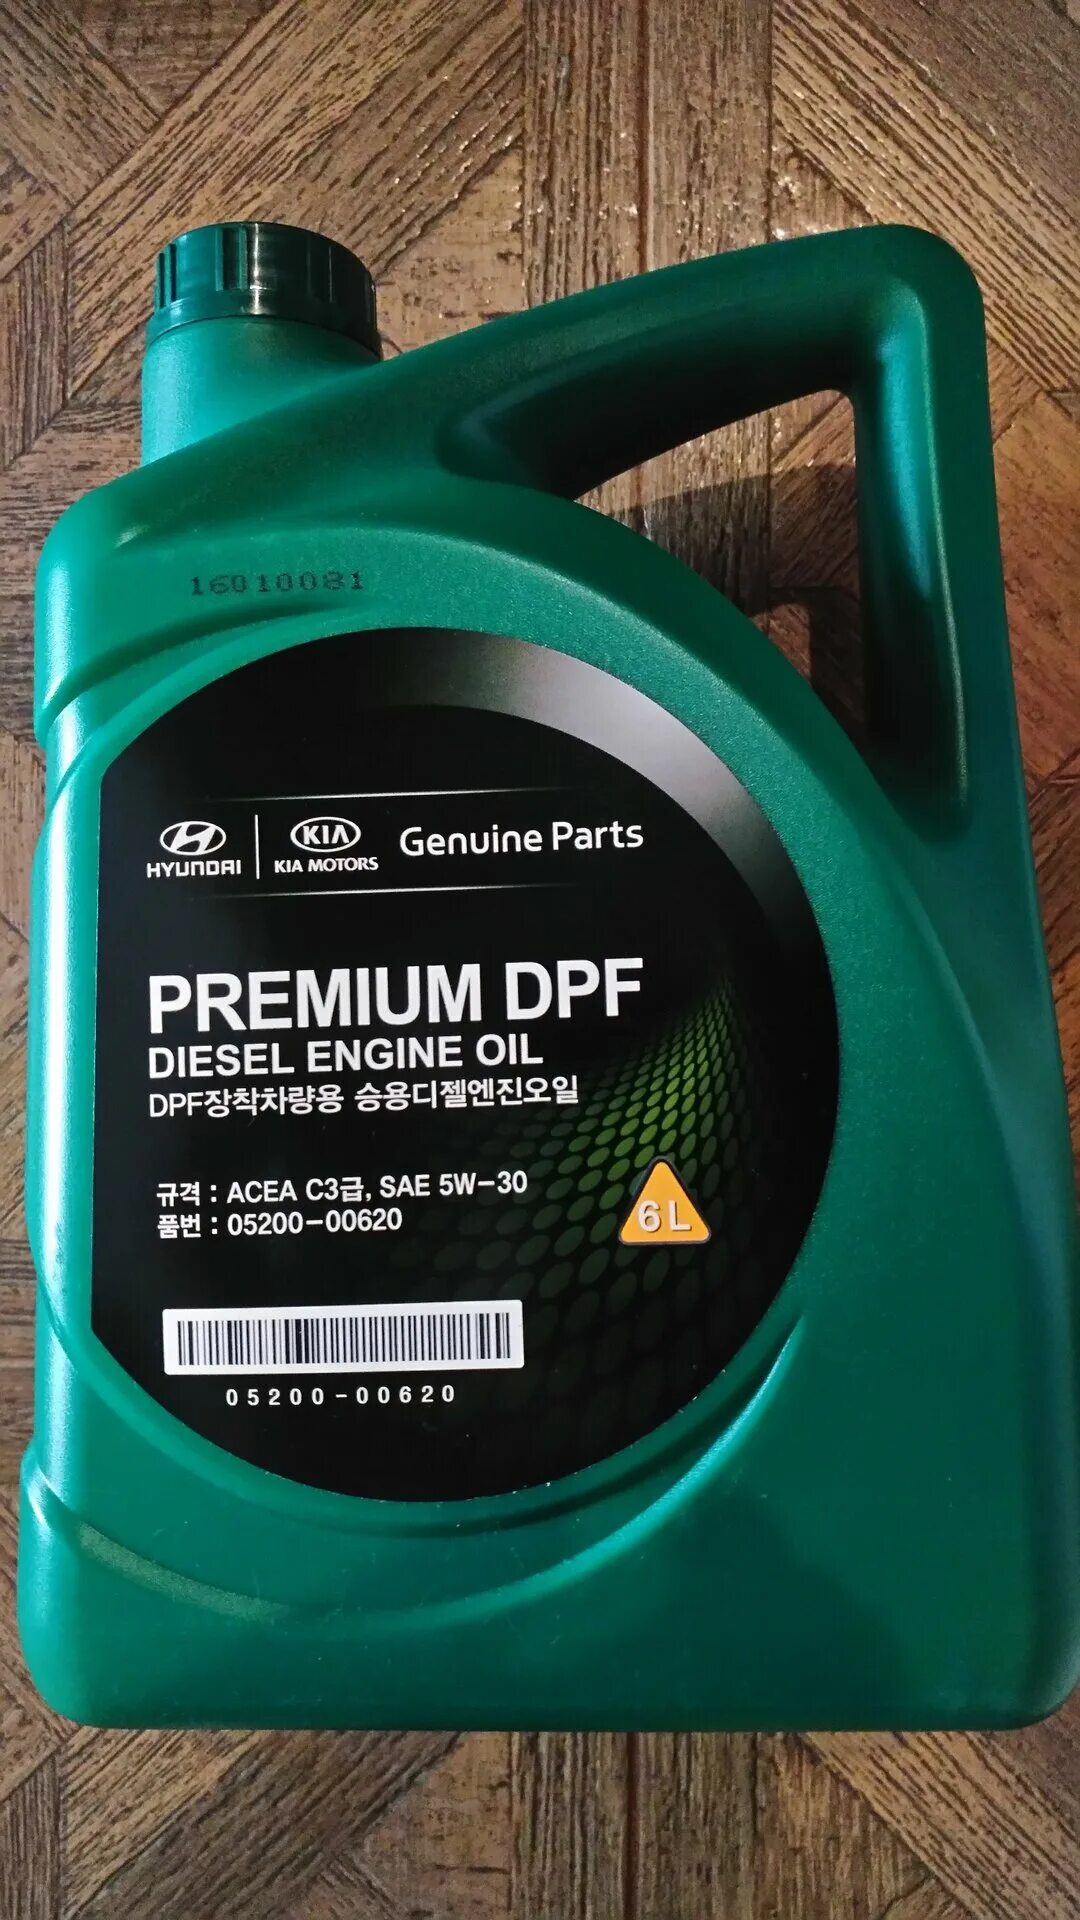 Premium DPF Diesel 5w-30. Масло mobis Premium DPF Diesel 5w-30. Hyundai Kia Premium DPF 5w-30 6 л. Mobis Premium DPF Diesel 5w-30, 6 n.